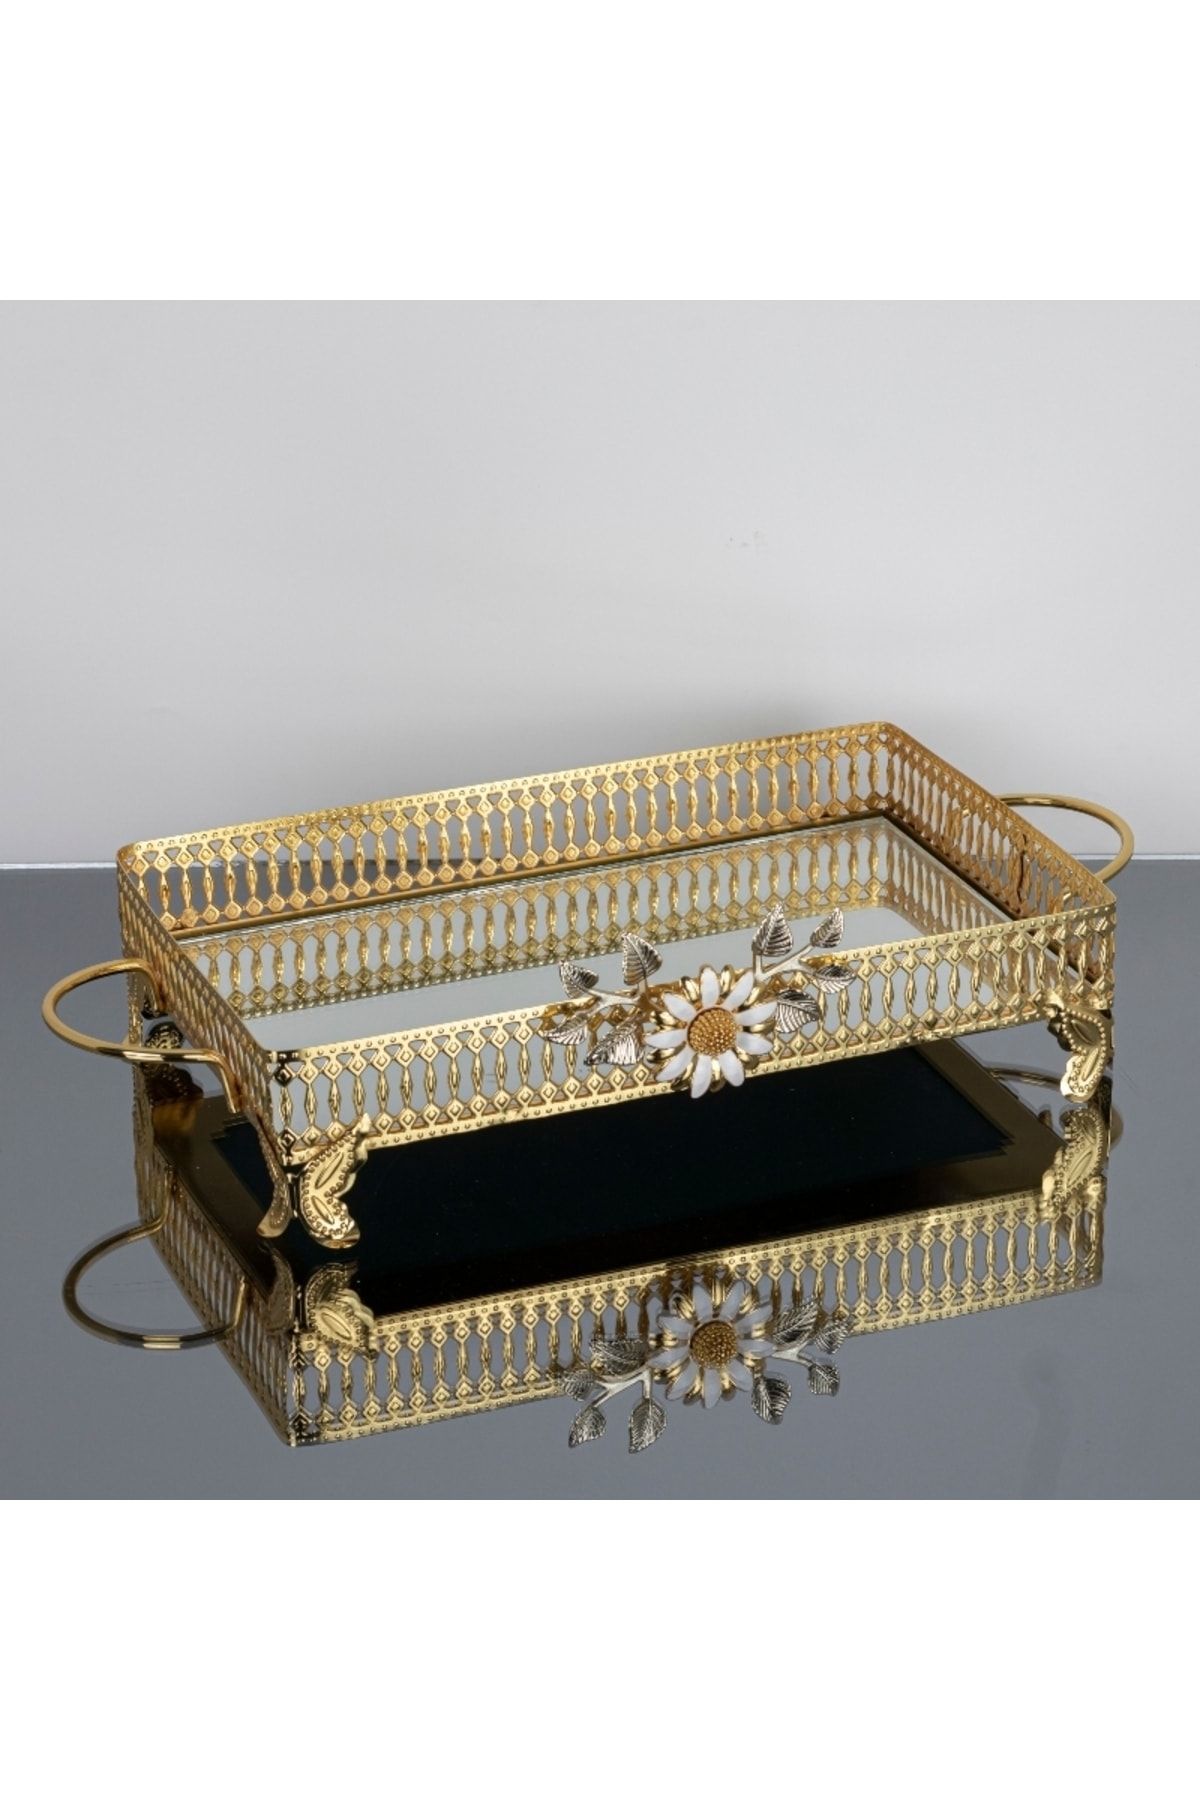 İnova Home Decor Firuze Çiçek Detaylı Gold Aynalı Nişan- Söz Tepsisi - Aynalı Tepsi 32 X 19 Cm - Orta Boy